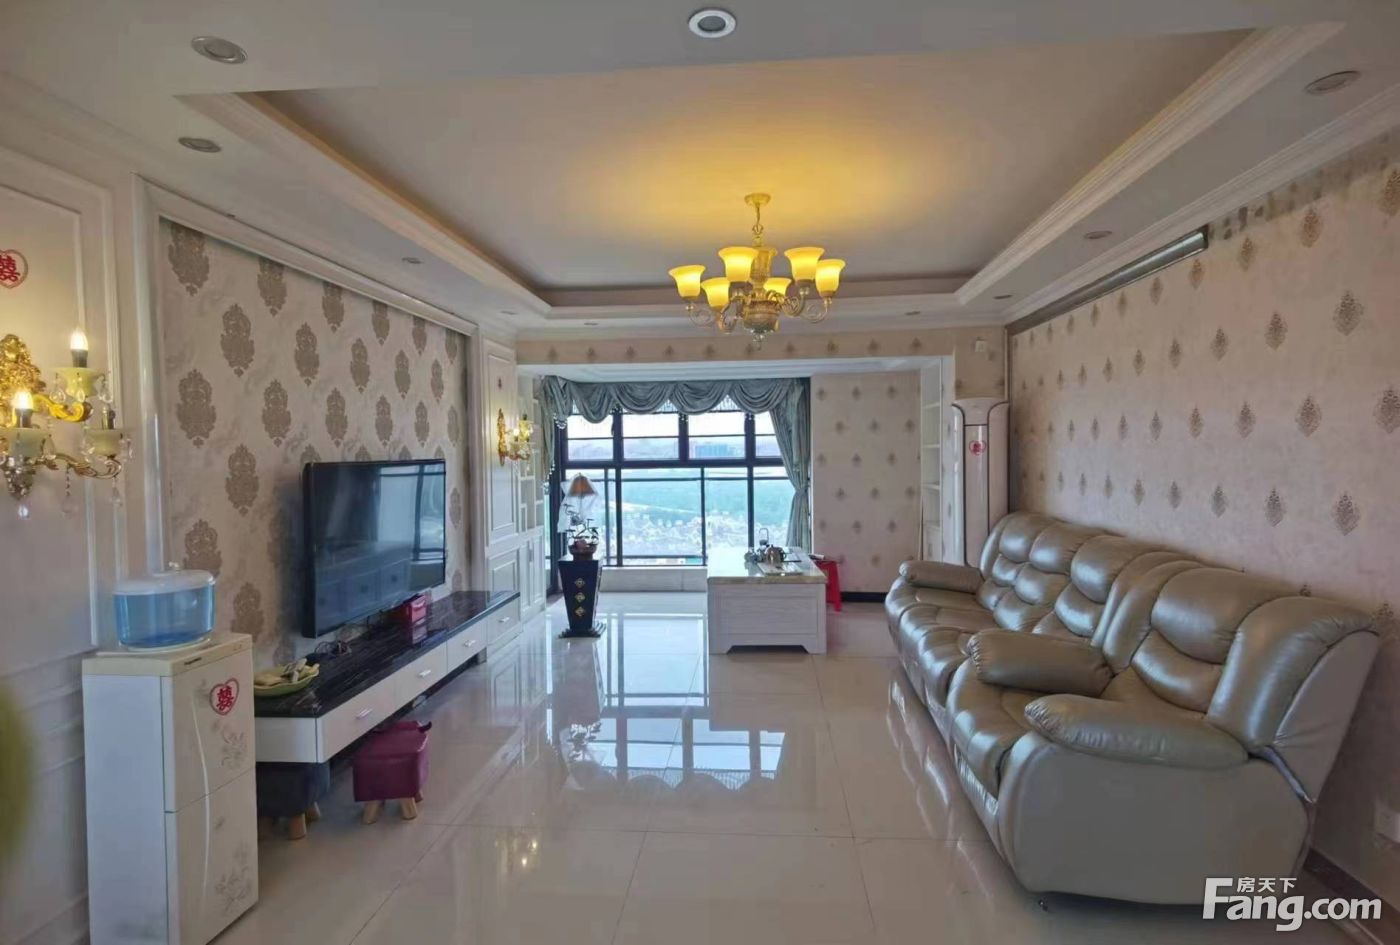 保利红珊瑚 4室2卫2厅 145平豪华装修 4500元/月